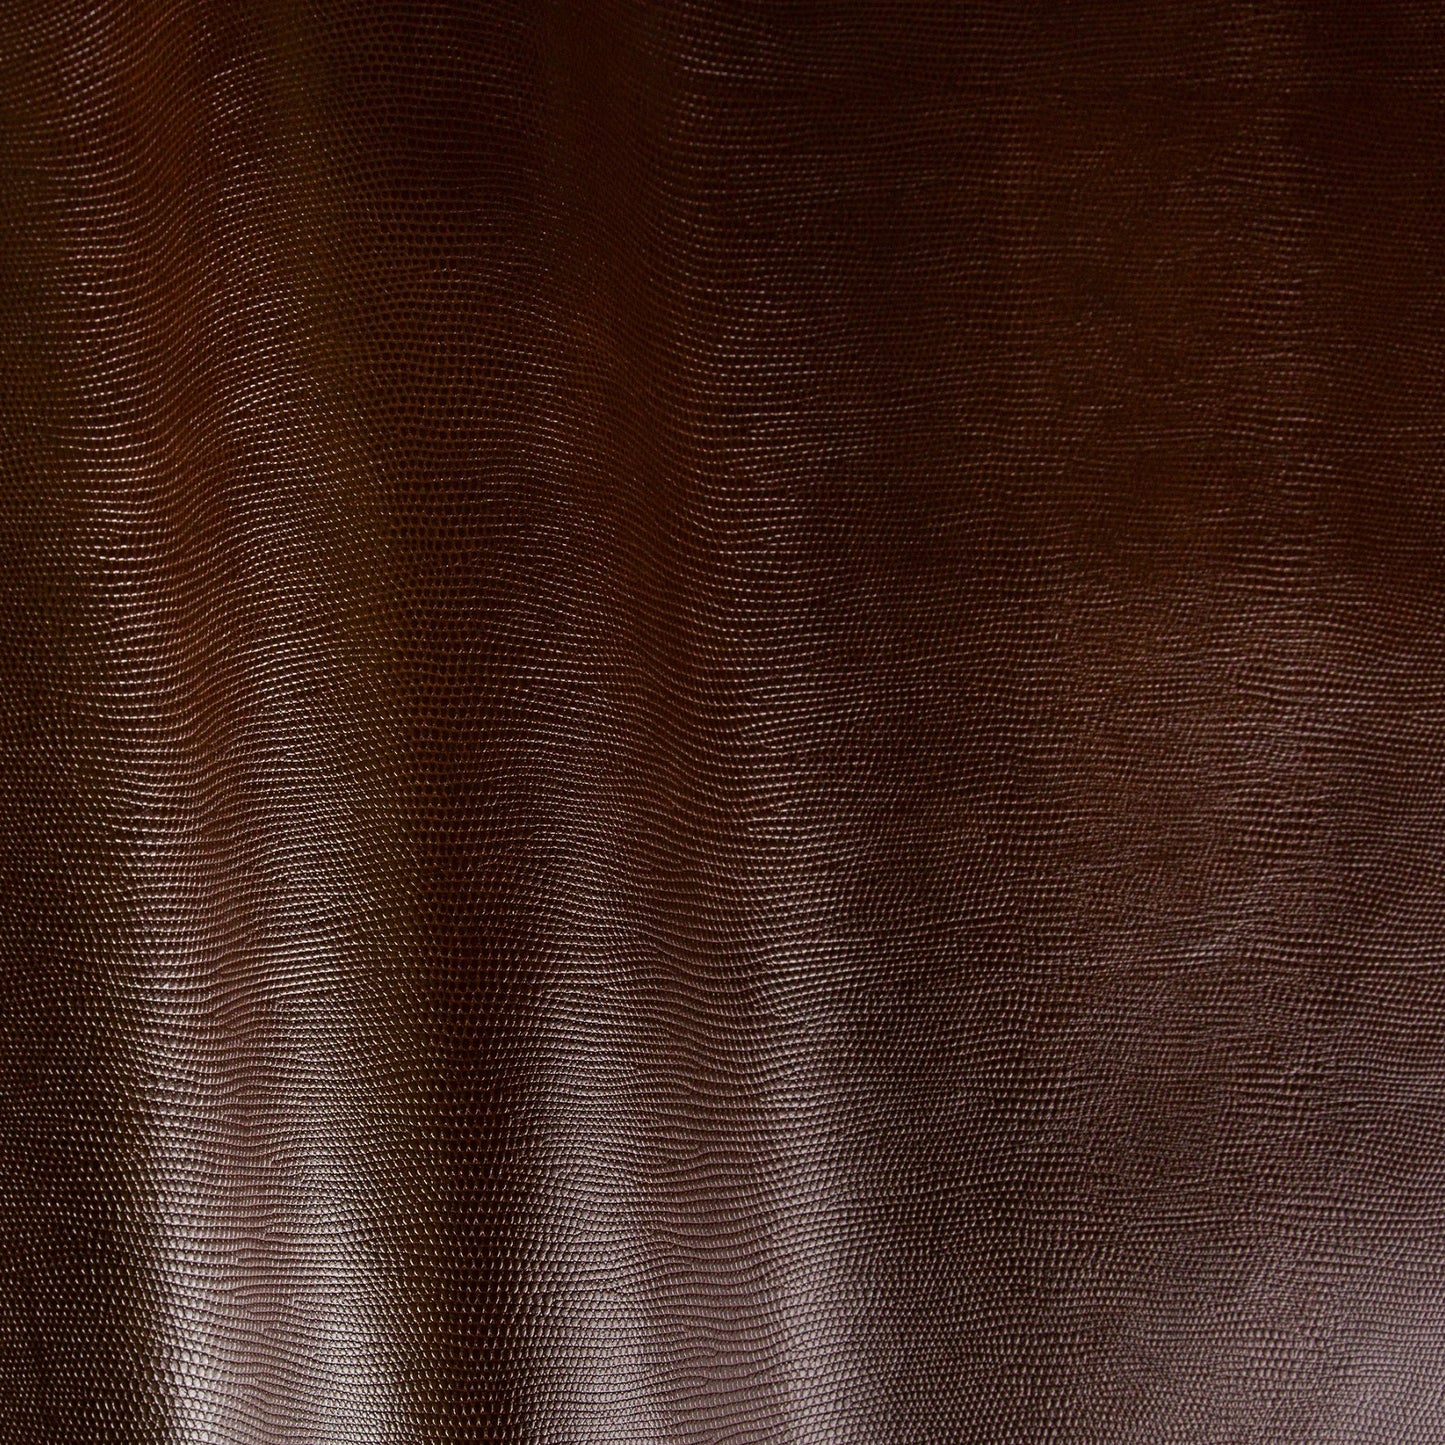 Iguana/genuine aniline dyed full hide leather